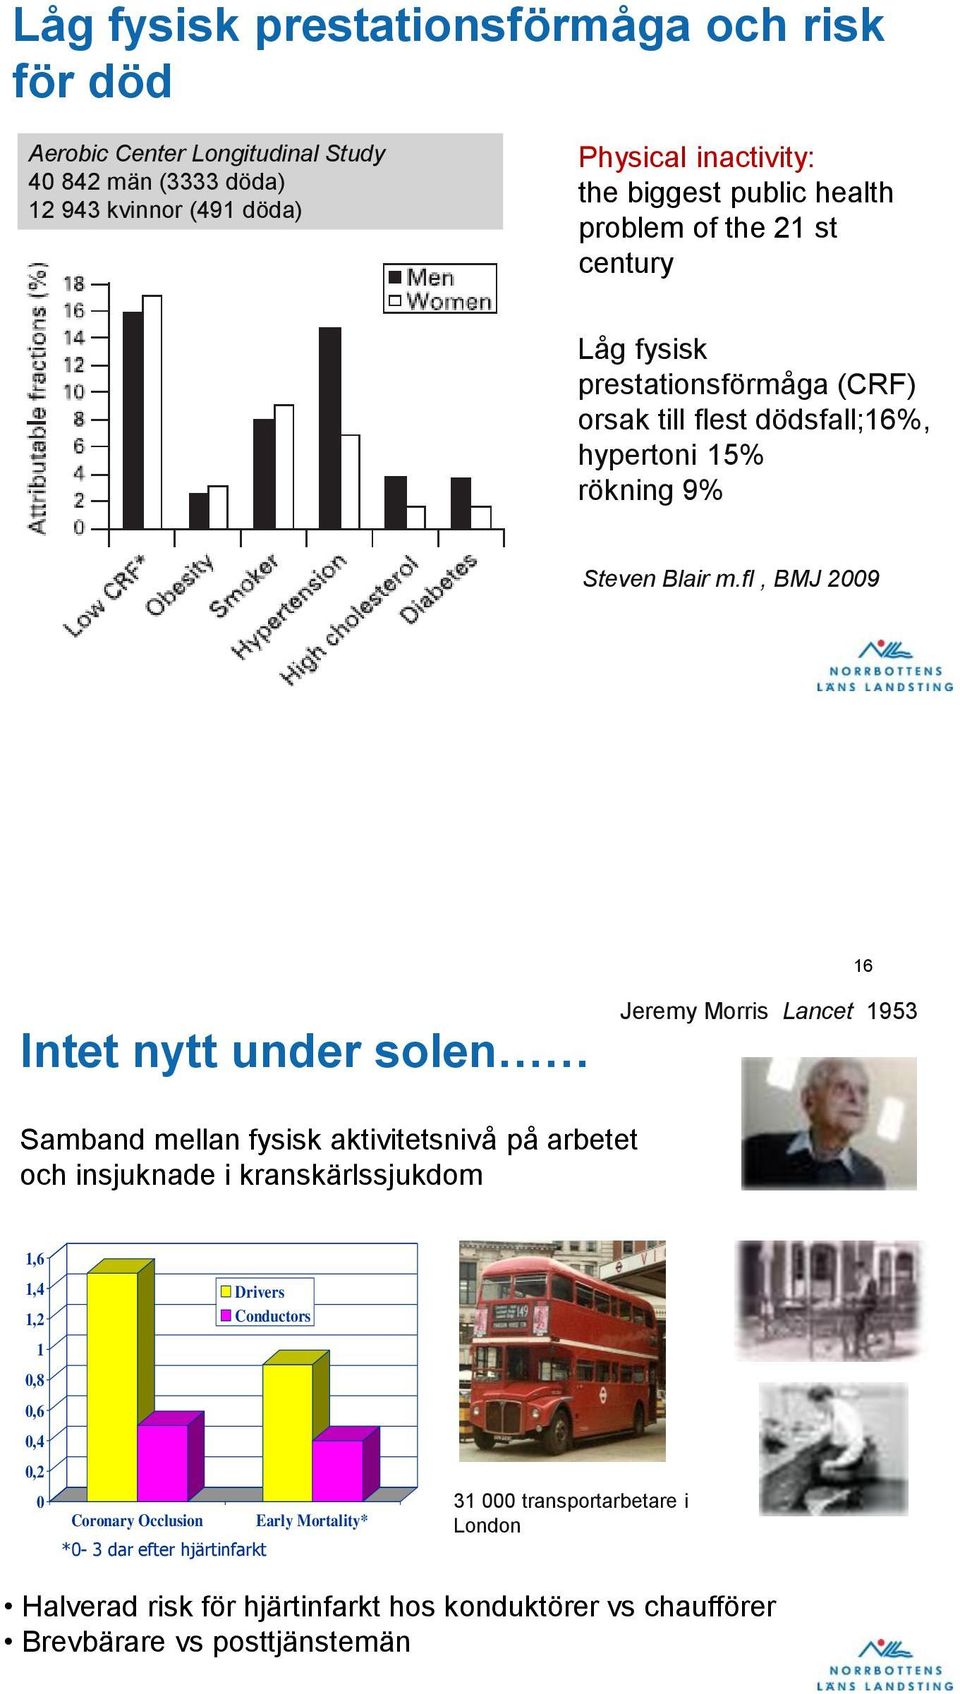 fl, BMJ 2009 16 Intet nytt under solen Jeremy Morris Lancet 1953 Samband mellan fysisk aktivitetsnivå på arbetet och insjuknade i kranskärlssjukdom 1,6 1,4 1,2 1 0,8 0,6 0,4